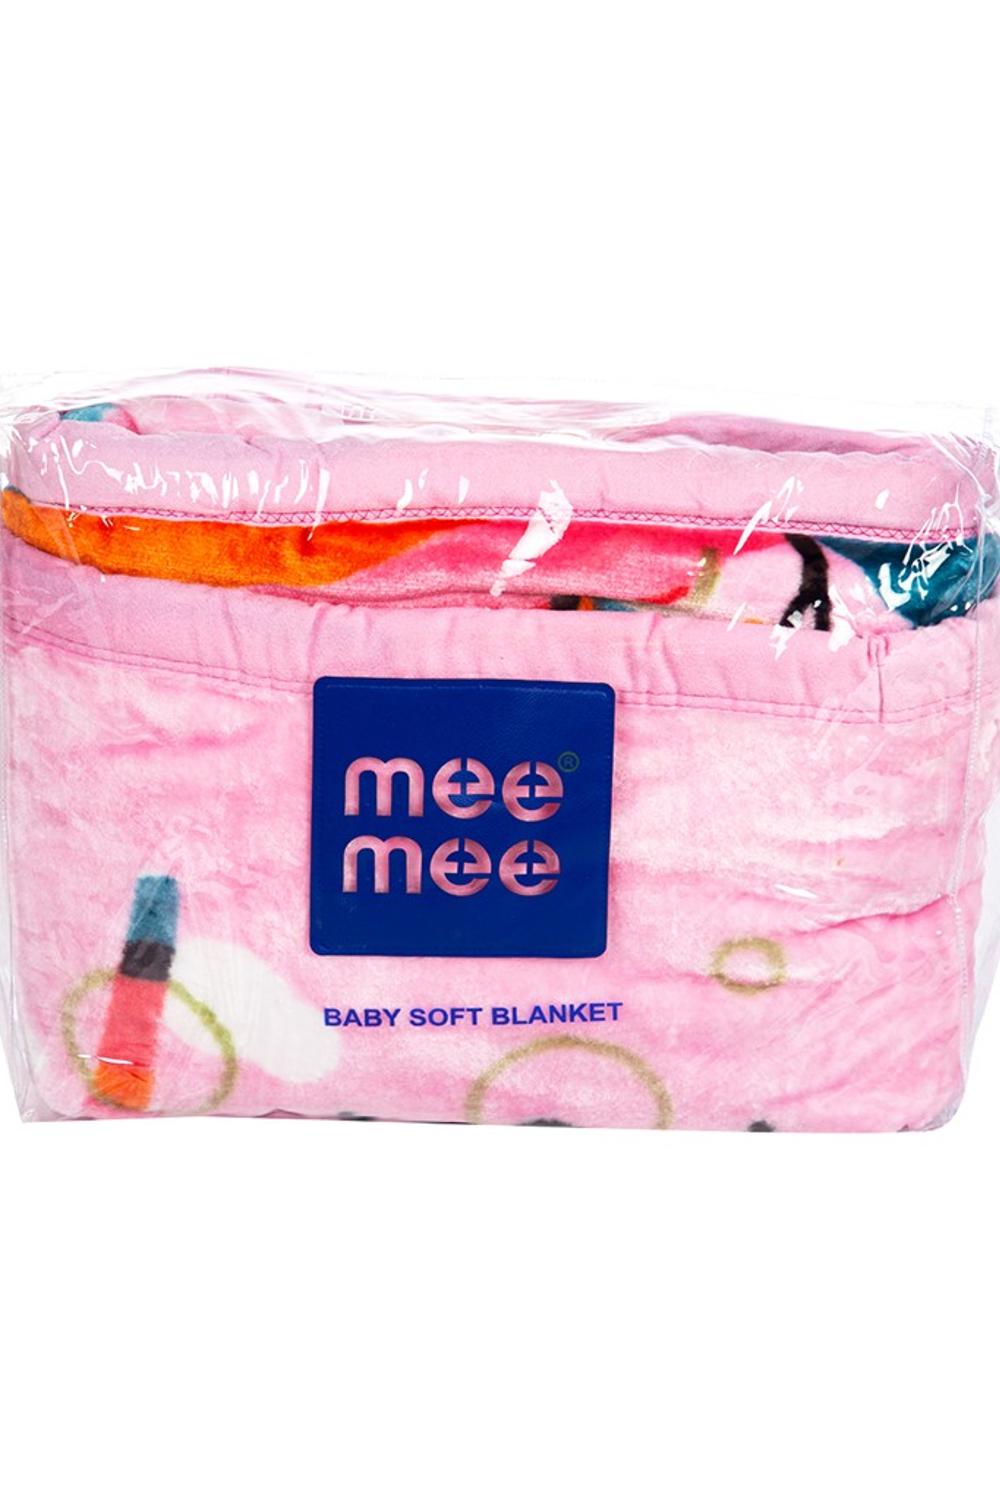 Mee Mee Soft Baby Blanket (Dark Pink)